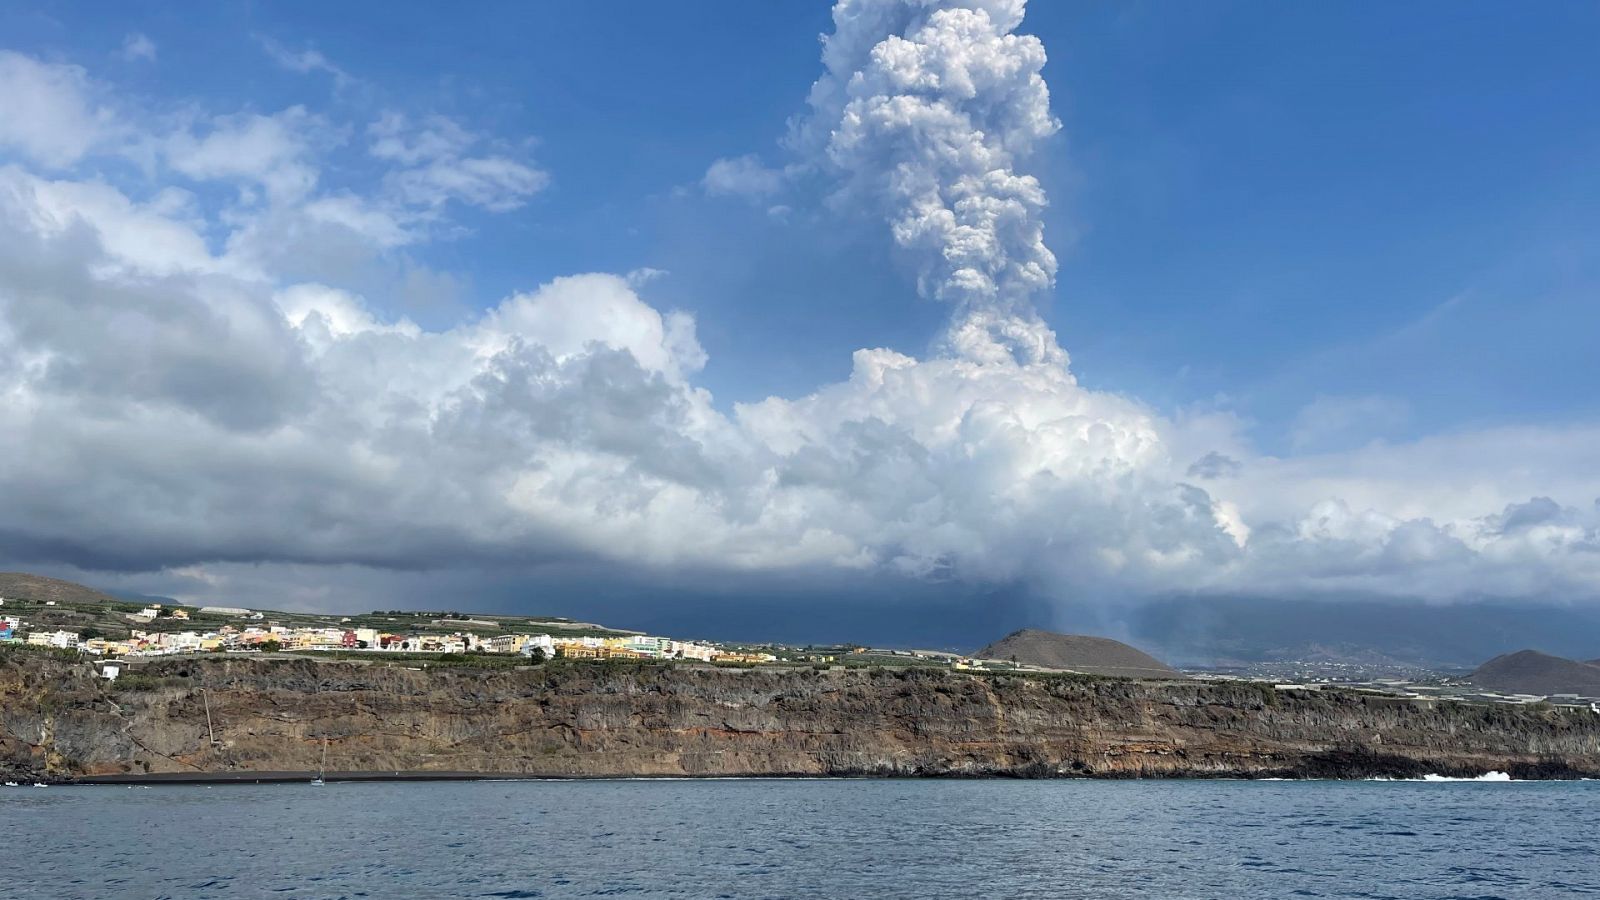 Erupción en La Palma - El fondo marino ya experimenta los efectos